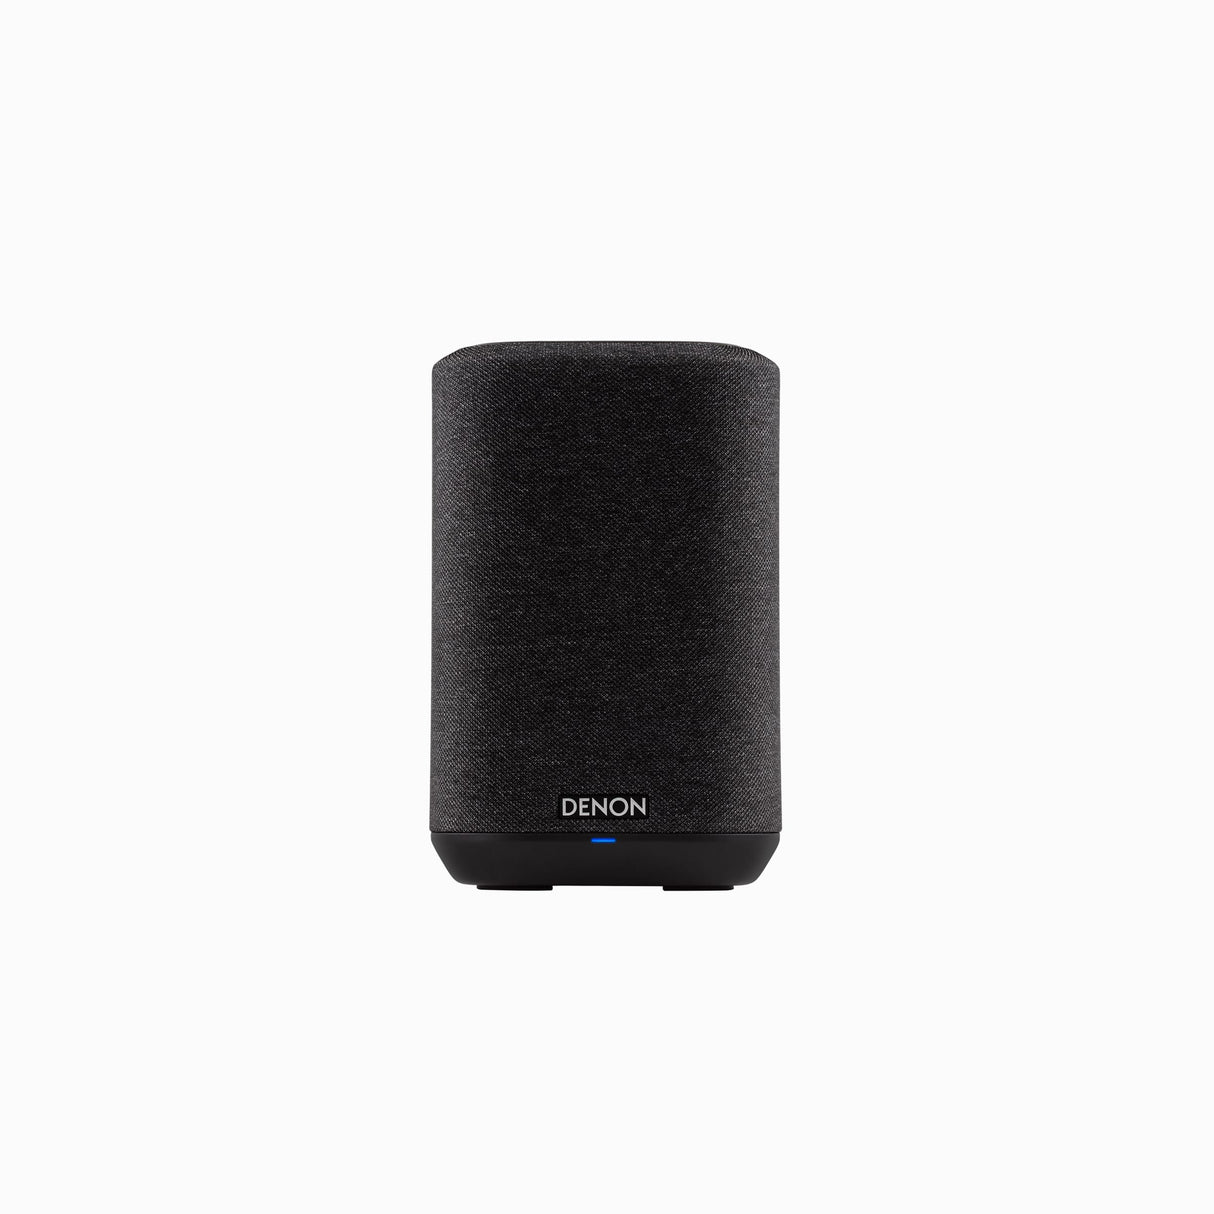 Denon Home Series 5.0 Wireless Home Theatre Soundbar System